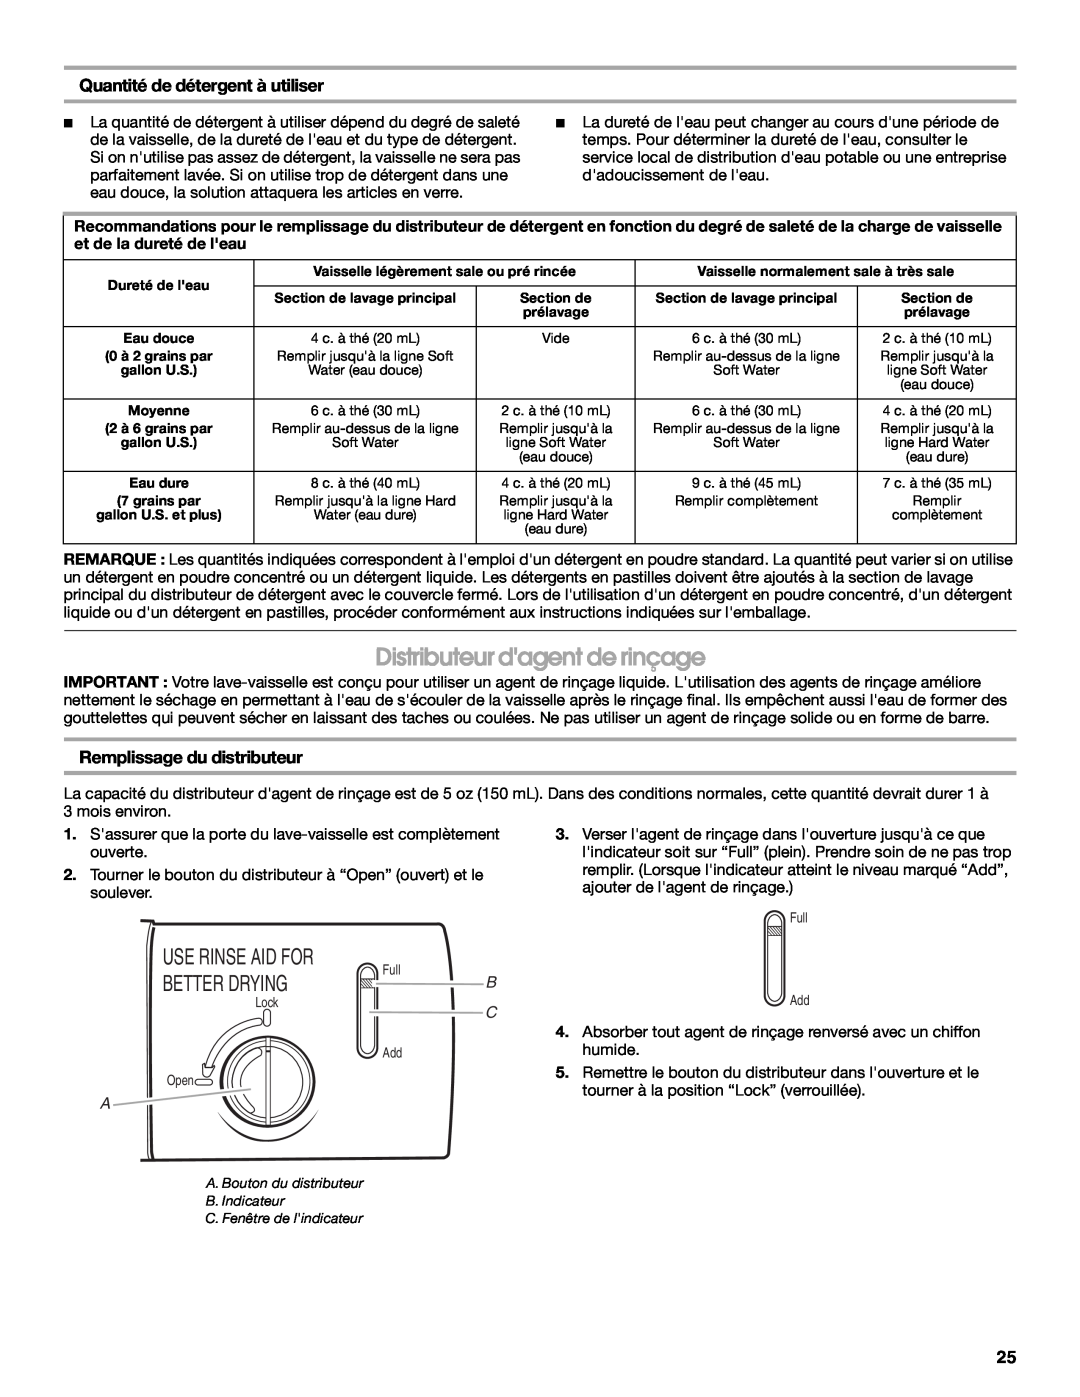 Whirlpool IUD8000R manual Distributeur dagent de rinçage, Quantité de détergent à utiliser, Remplissage du distributeur 